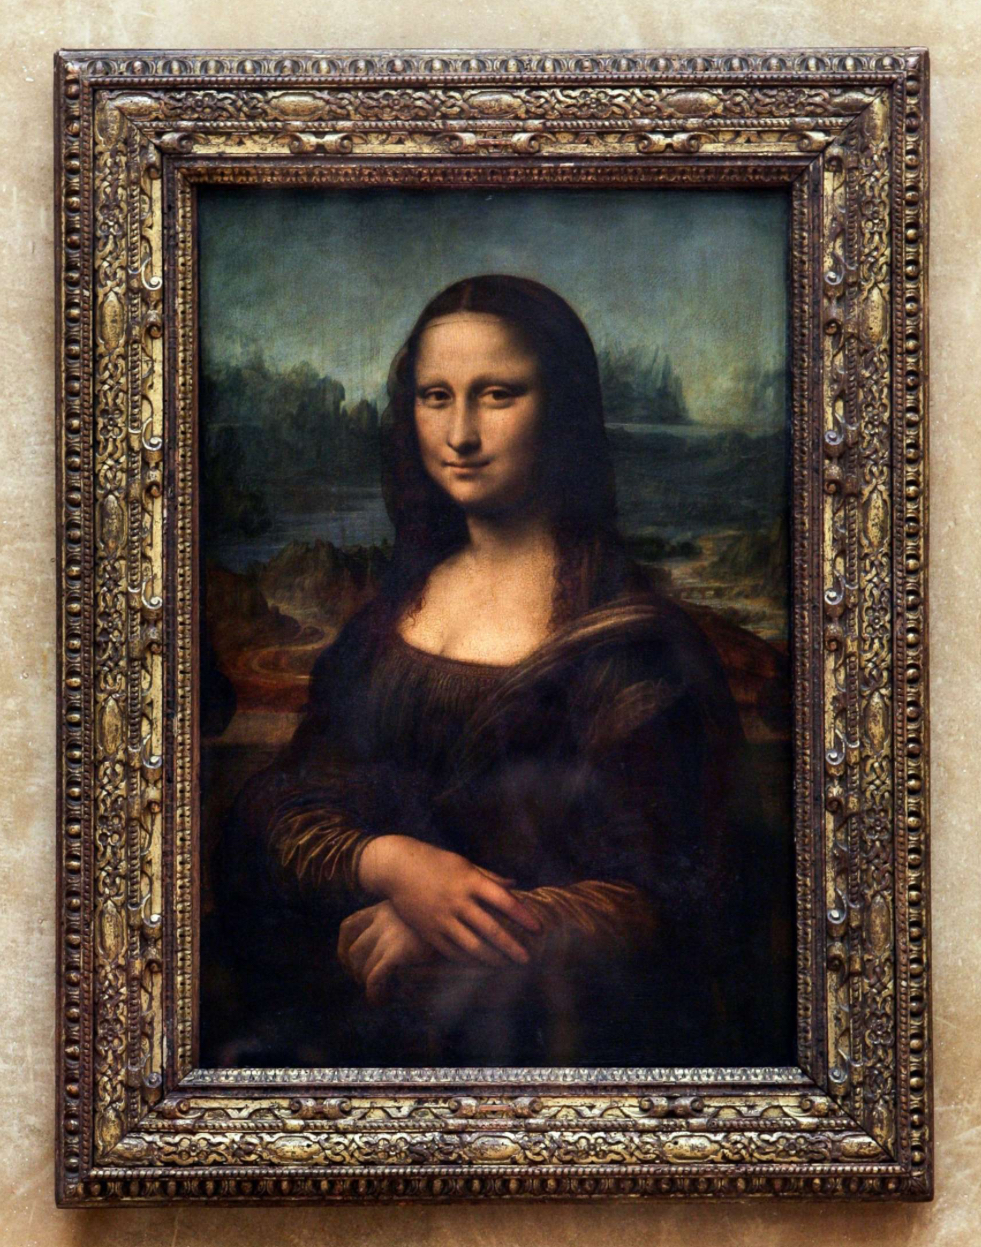 Mona Lisa Blank Meme Template